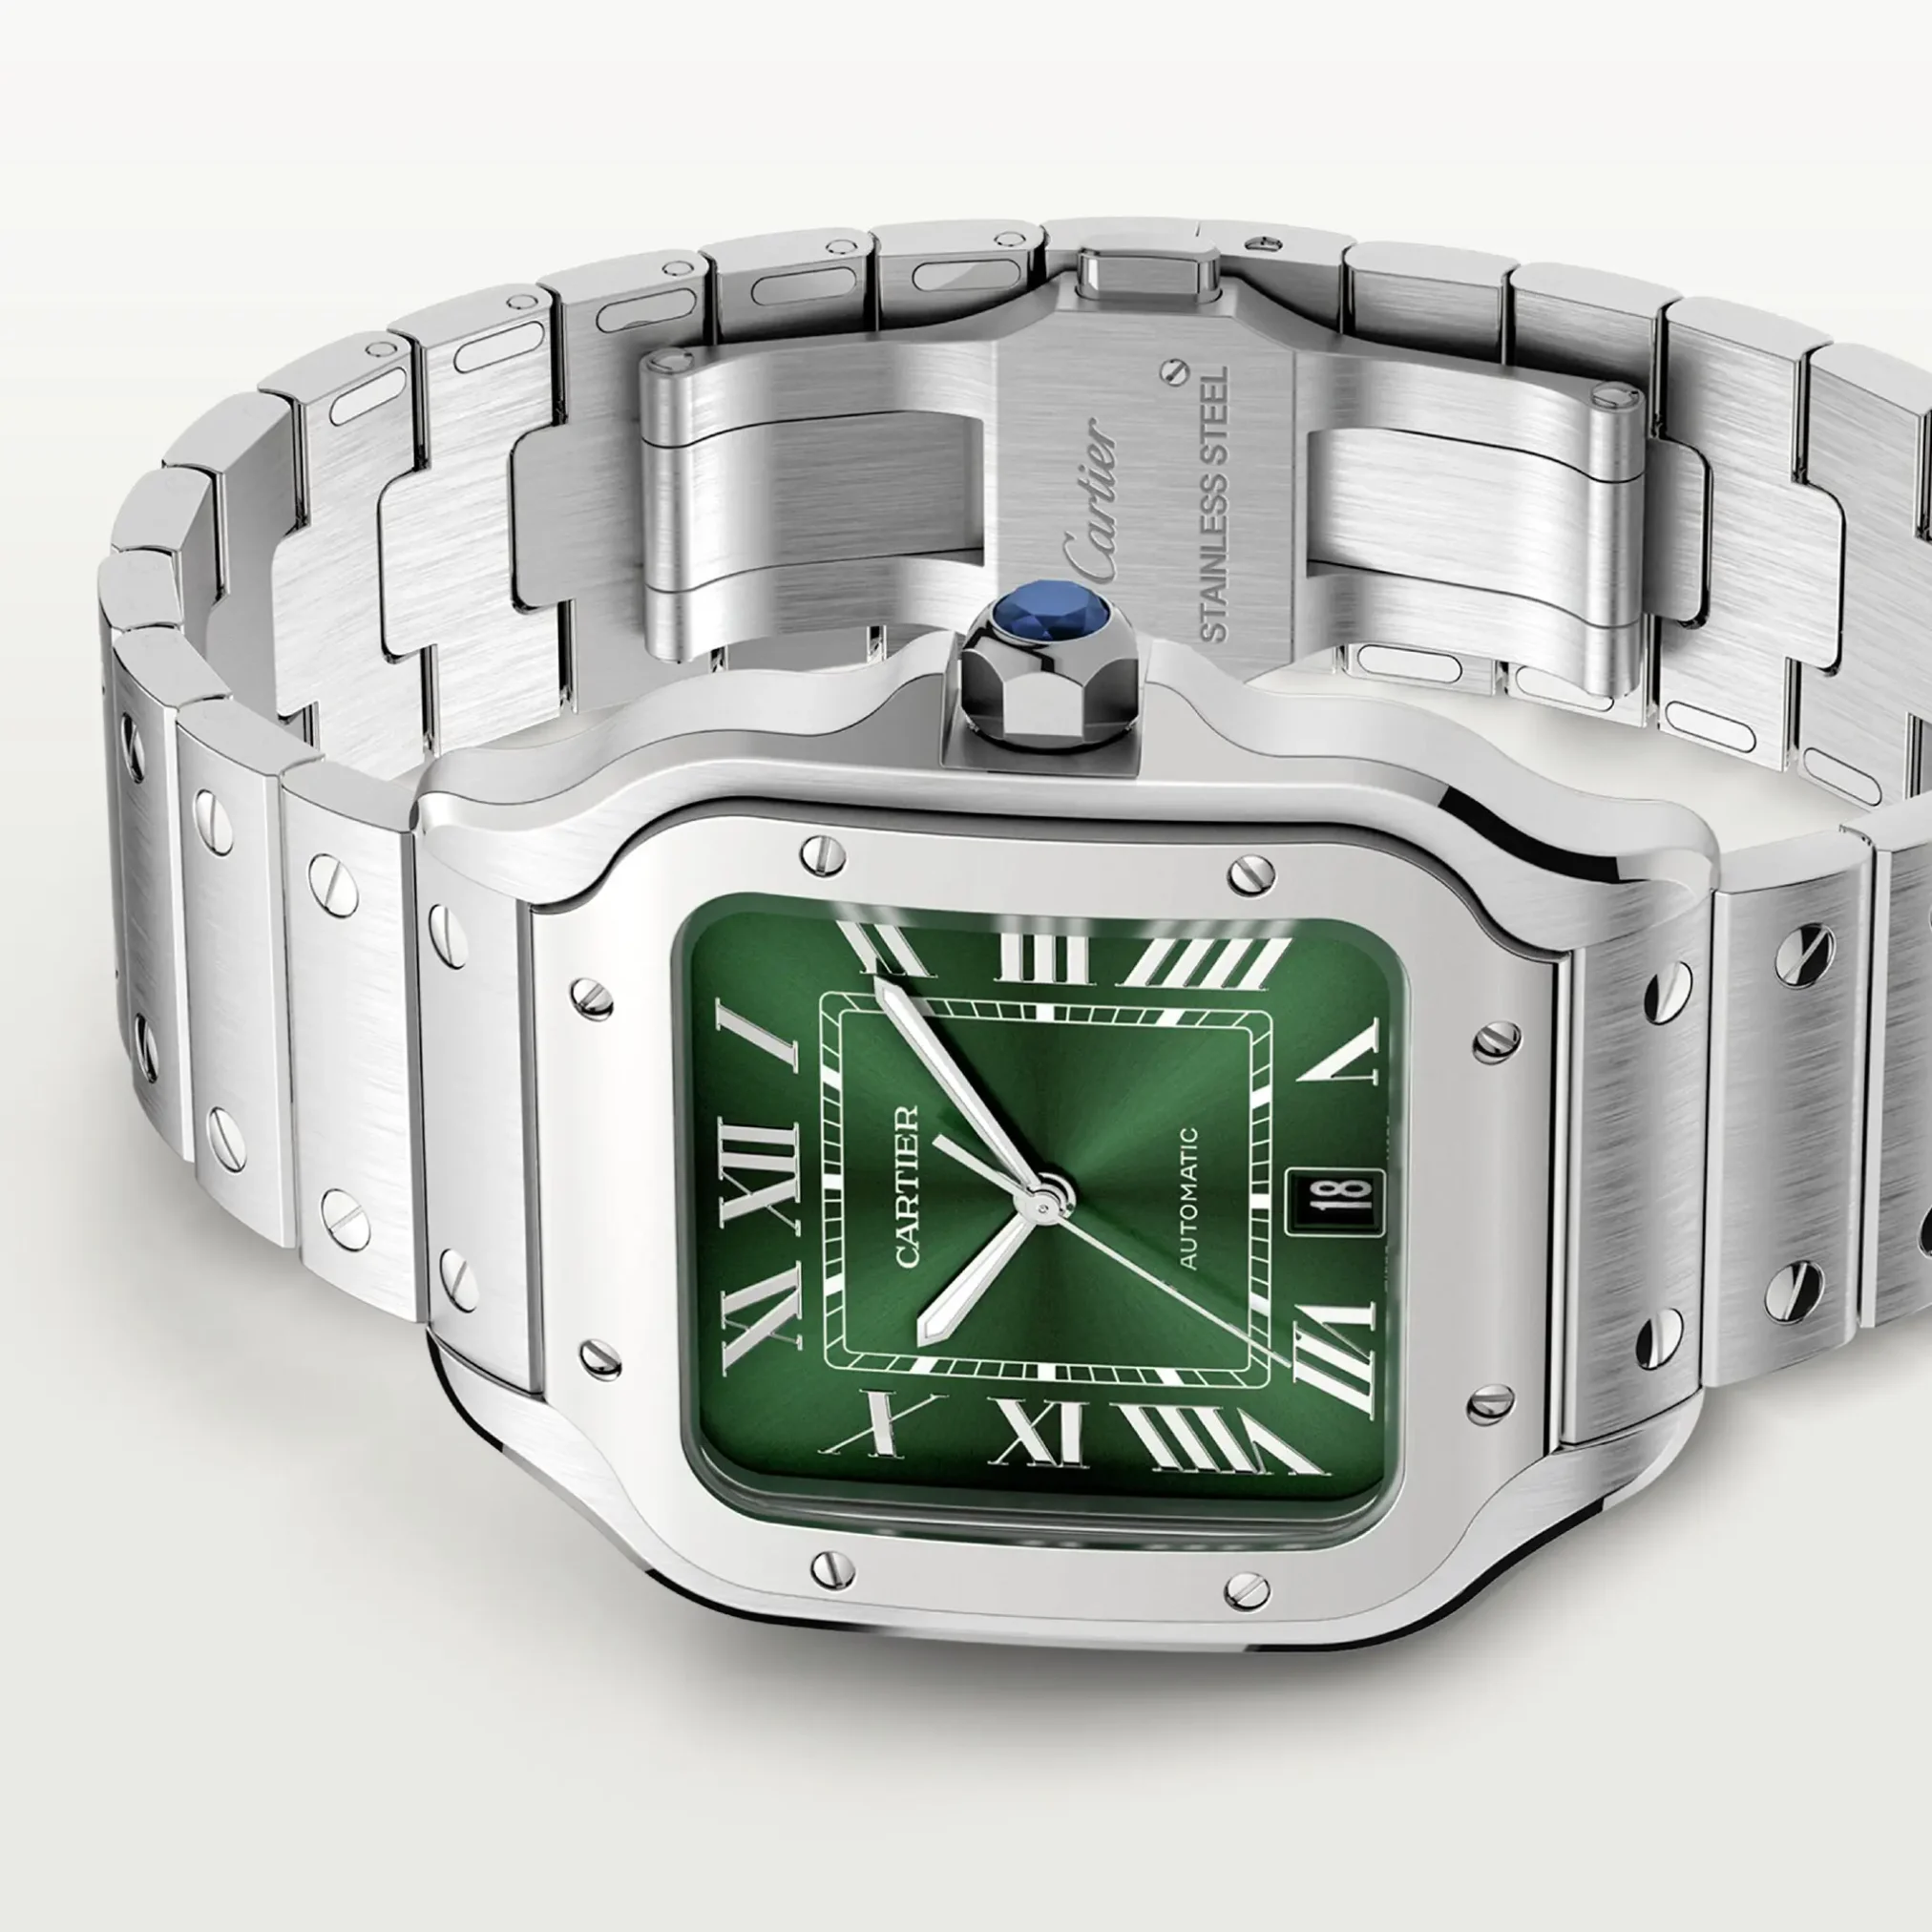 Đồng hồ Cartier Santos De Cartier Large Automatic WSSA0062 mặt số màu xanh. Dây đeo bằng thép. Thân vỏ bằng thép.